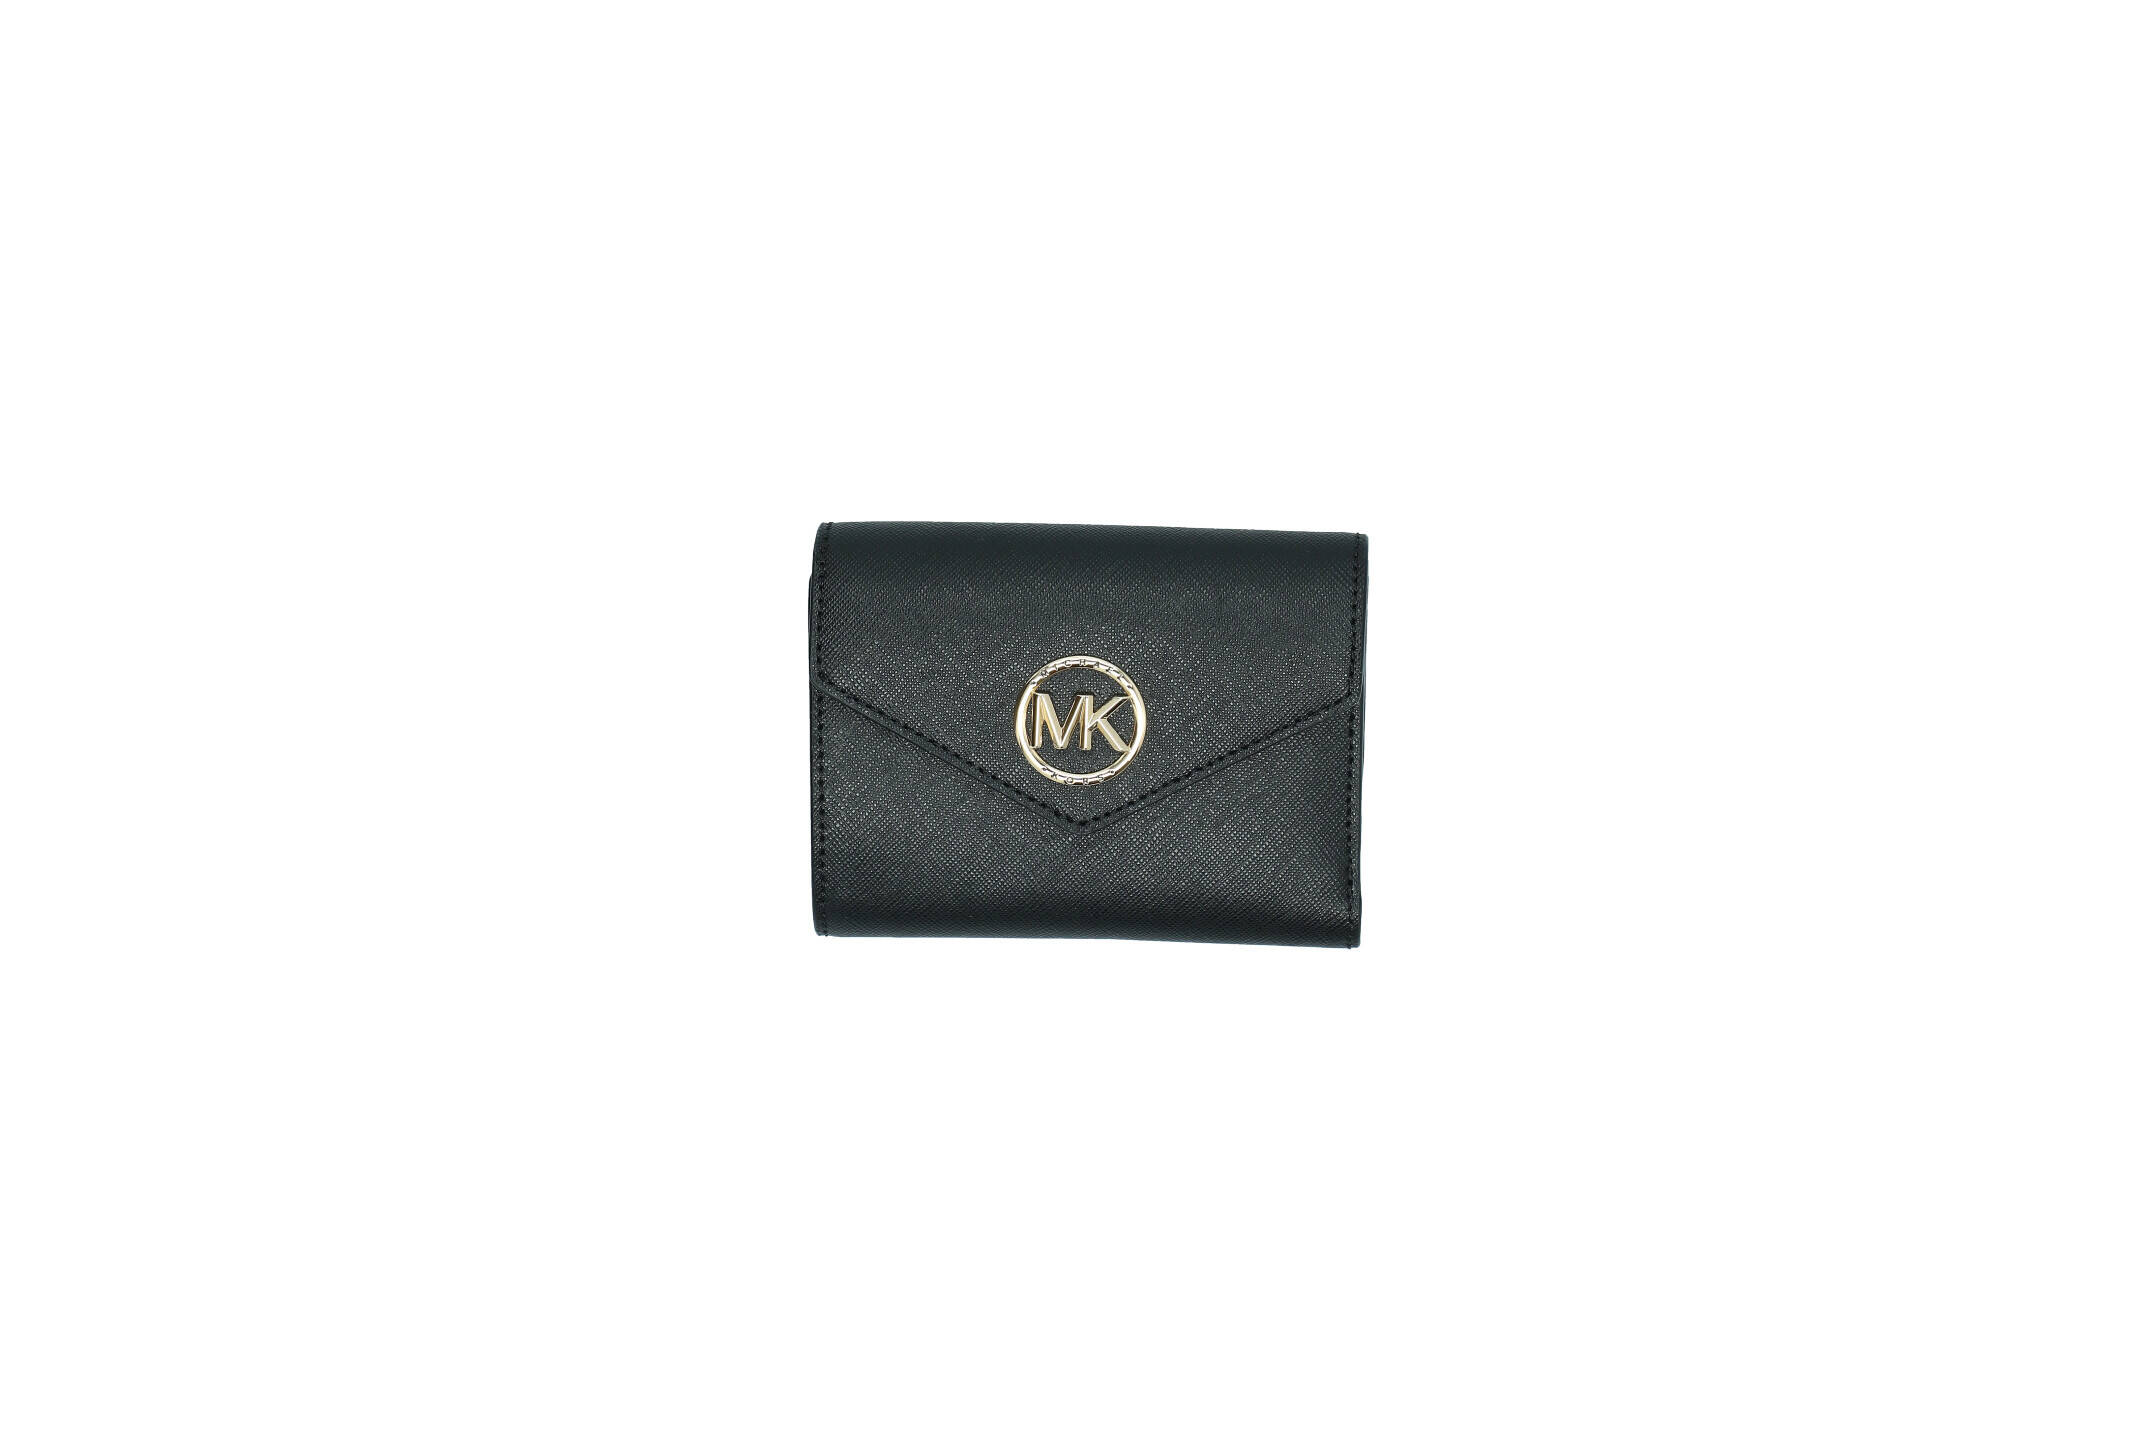 Leather wallet Carmen